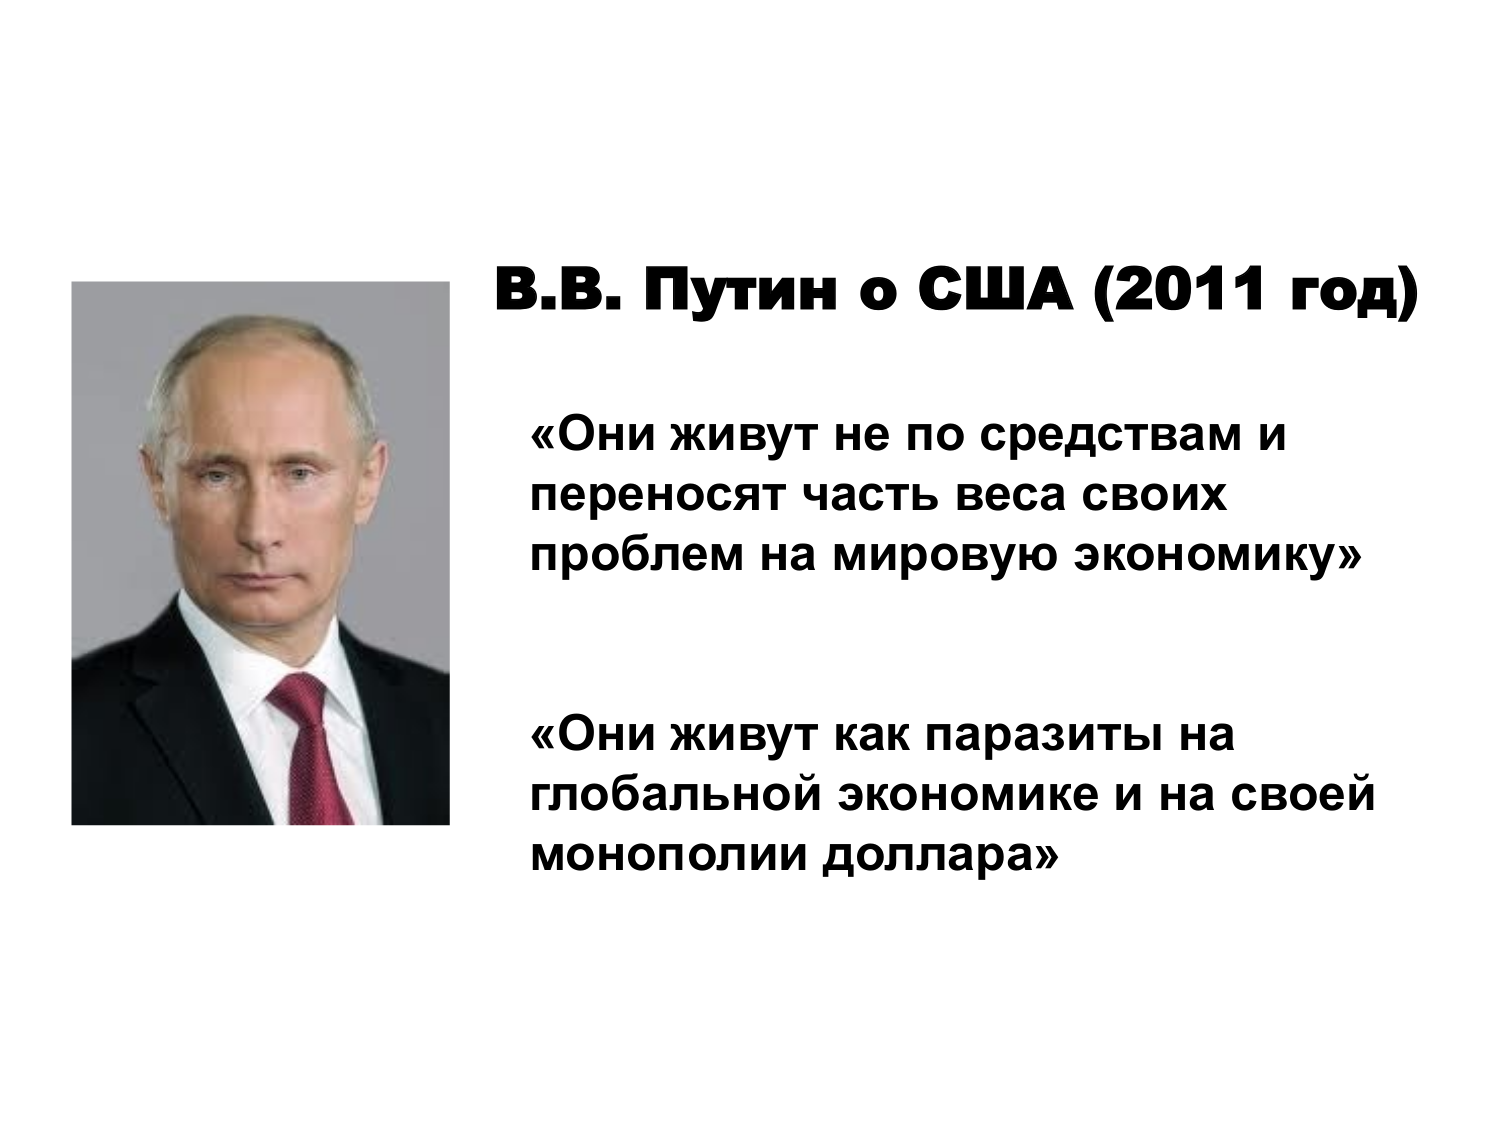 Что америка говорит россии. Высказывания Путина. Цитаты Путина о США.